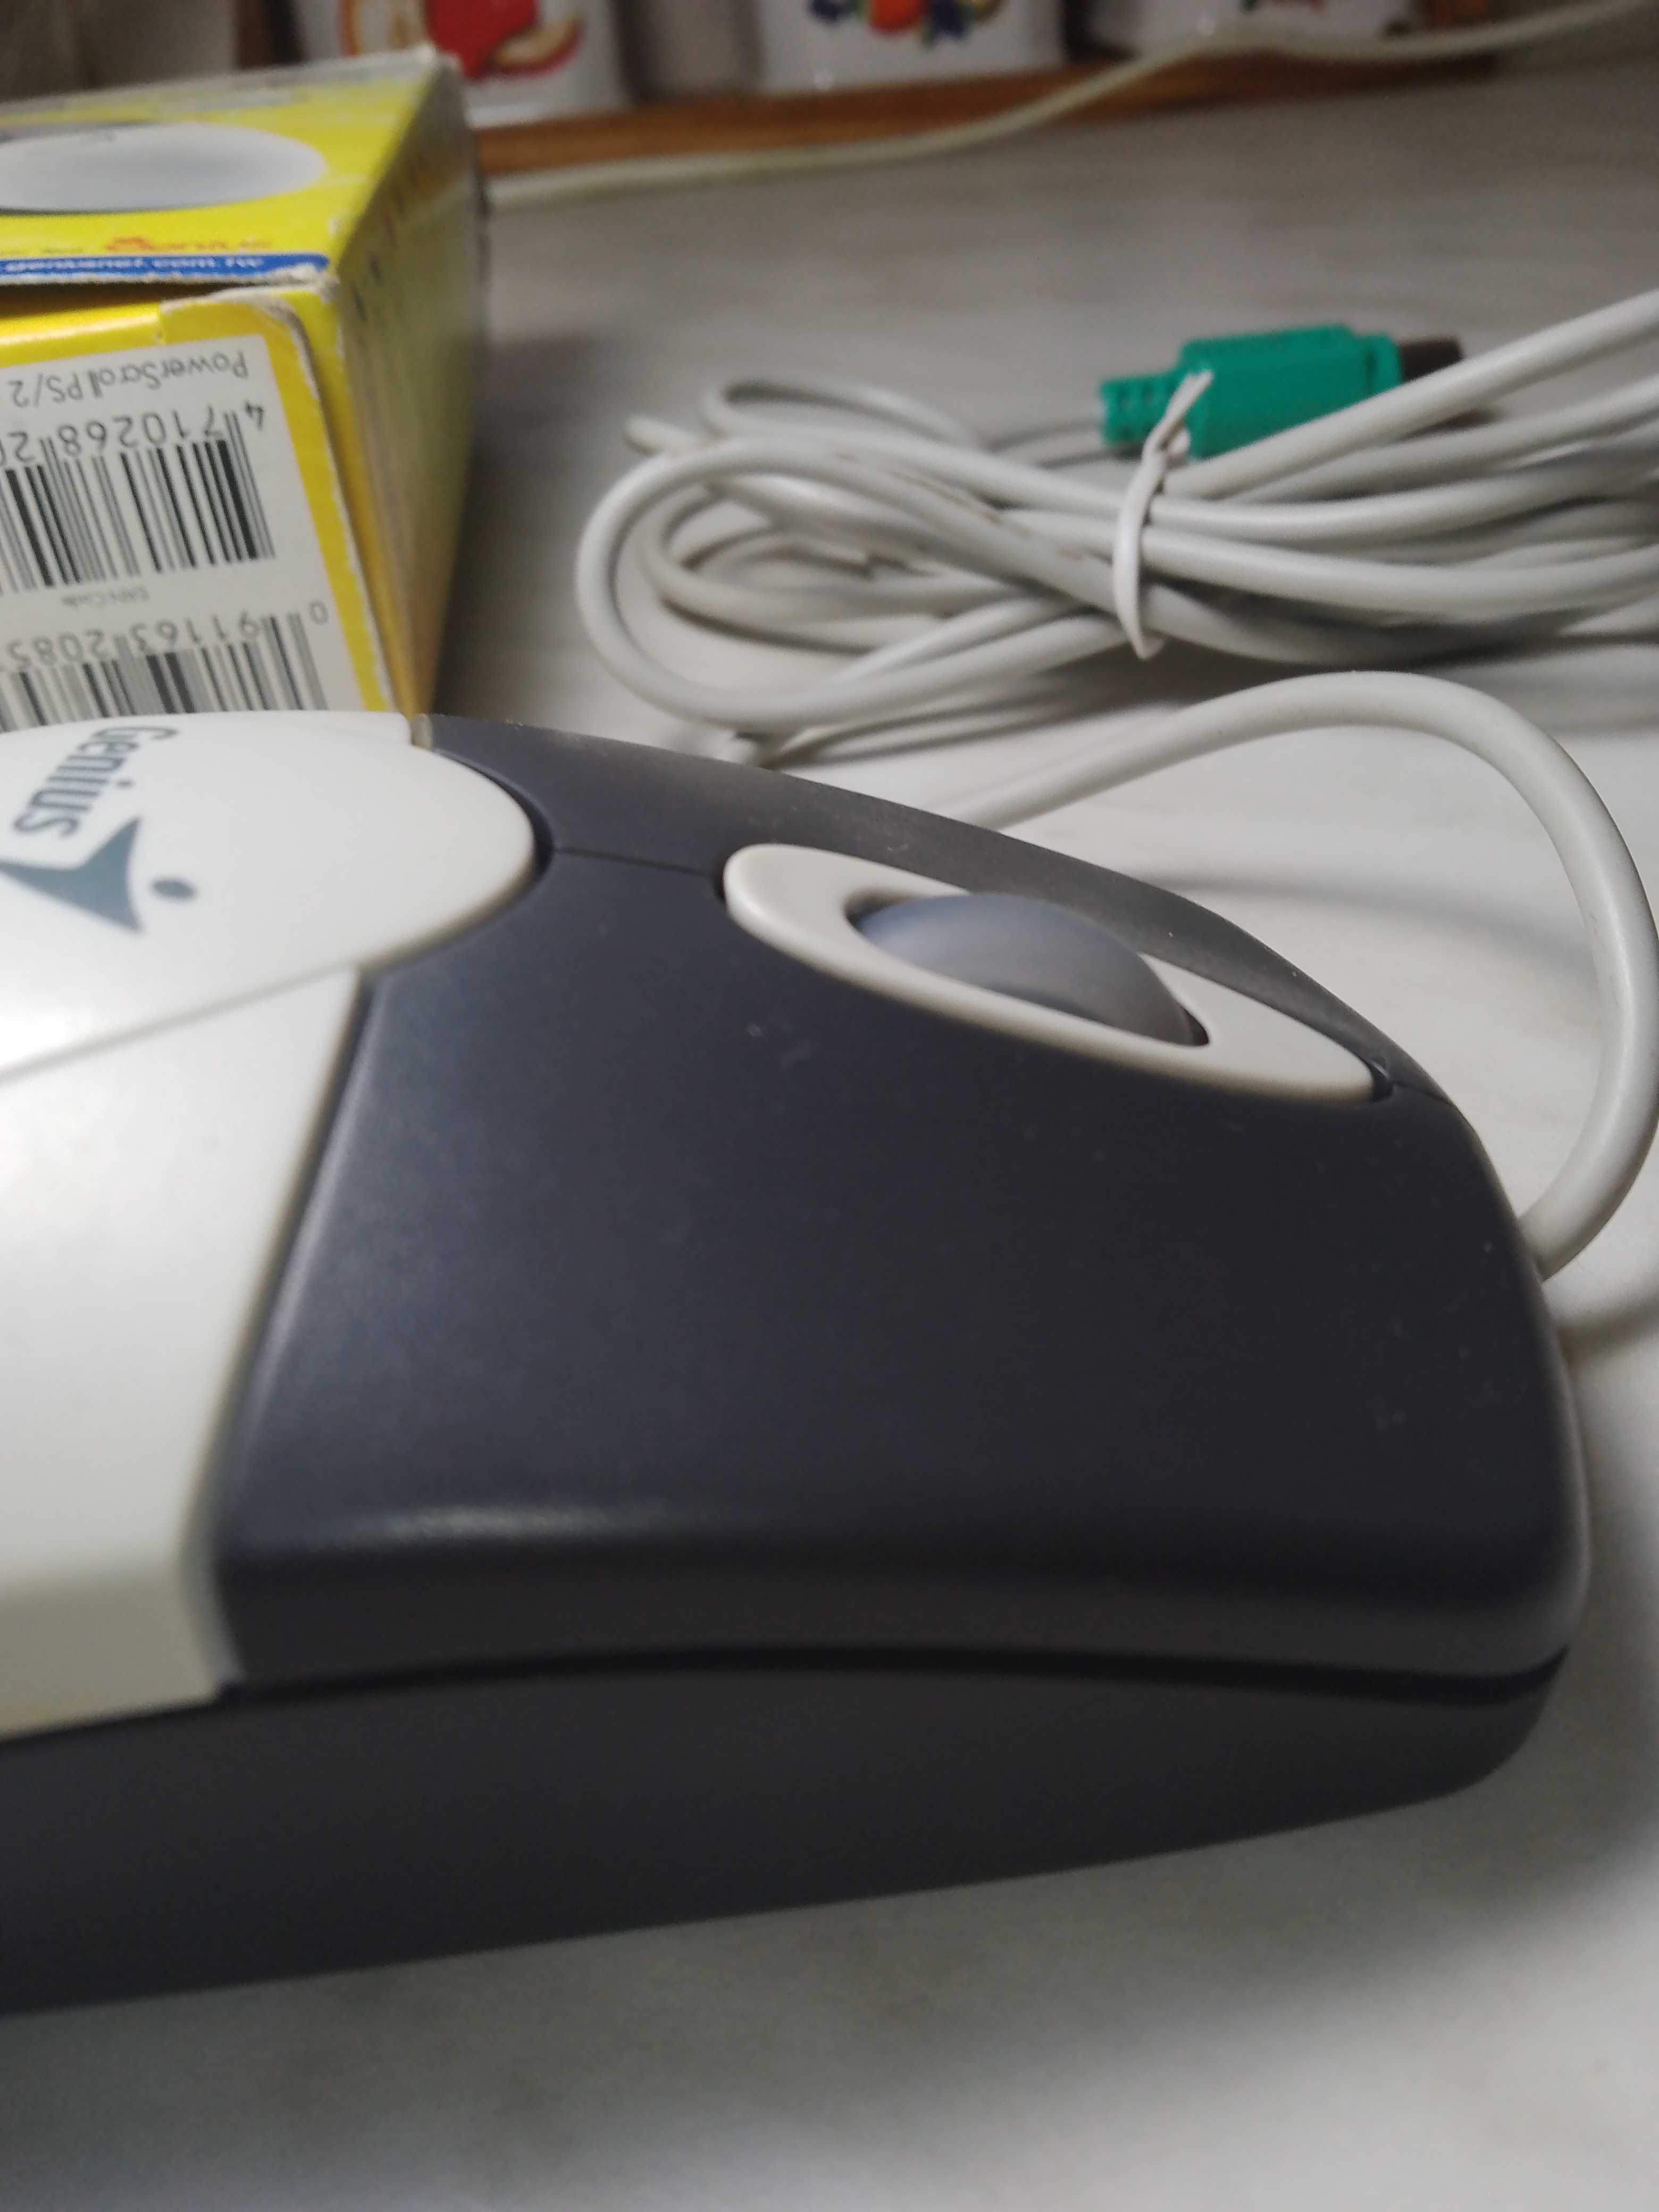 Ретро мышка GENIUS ps2 (новая) в коробке 1998-2000г.